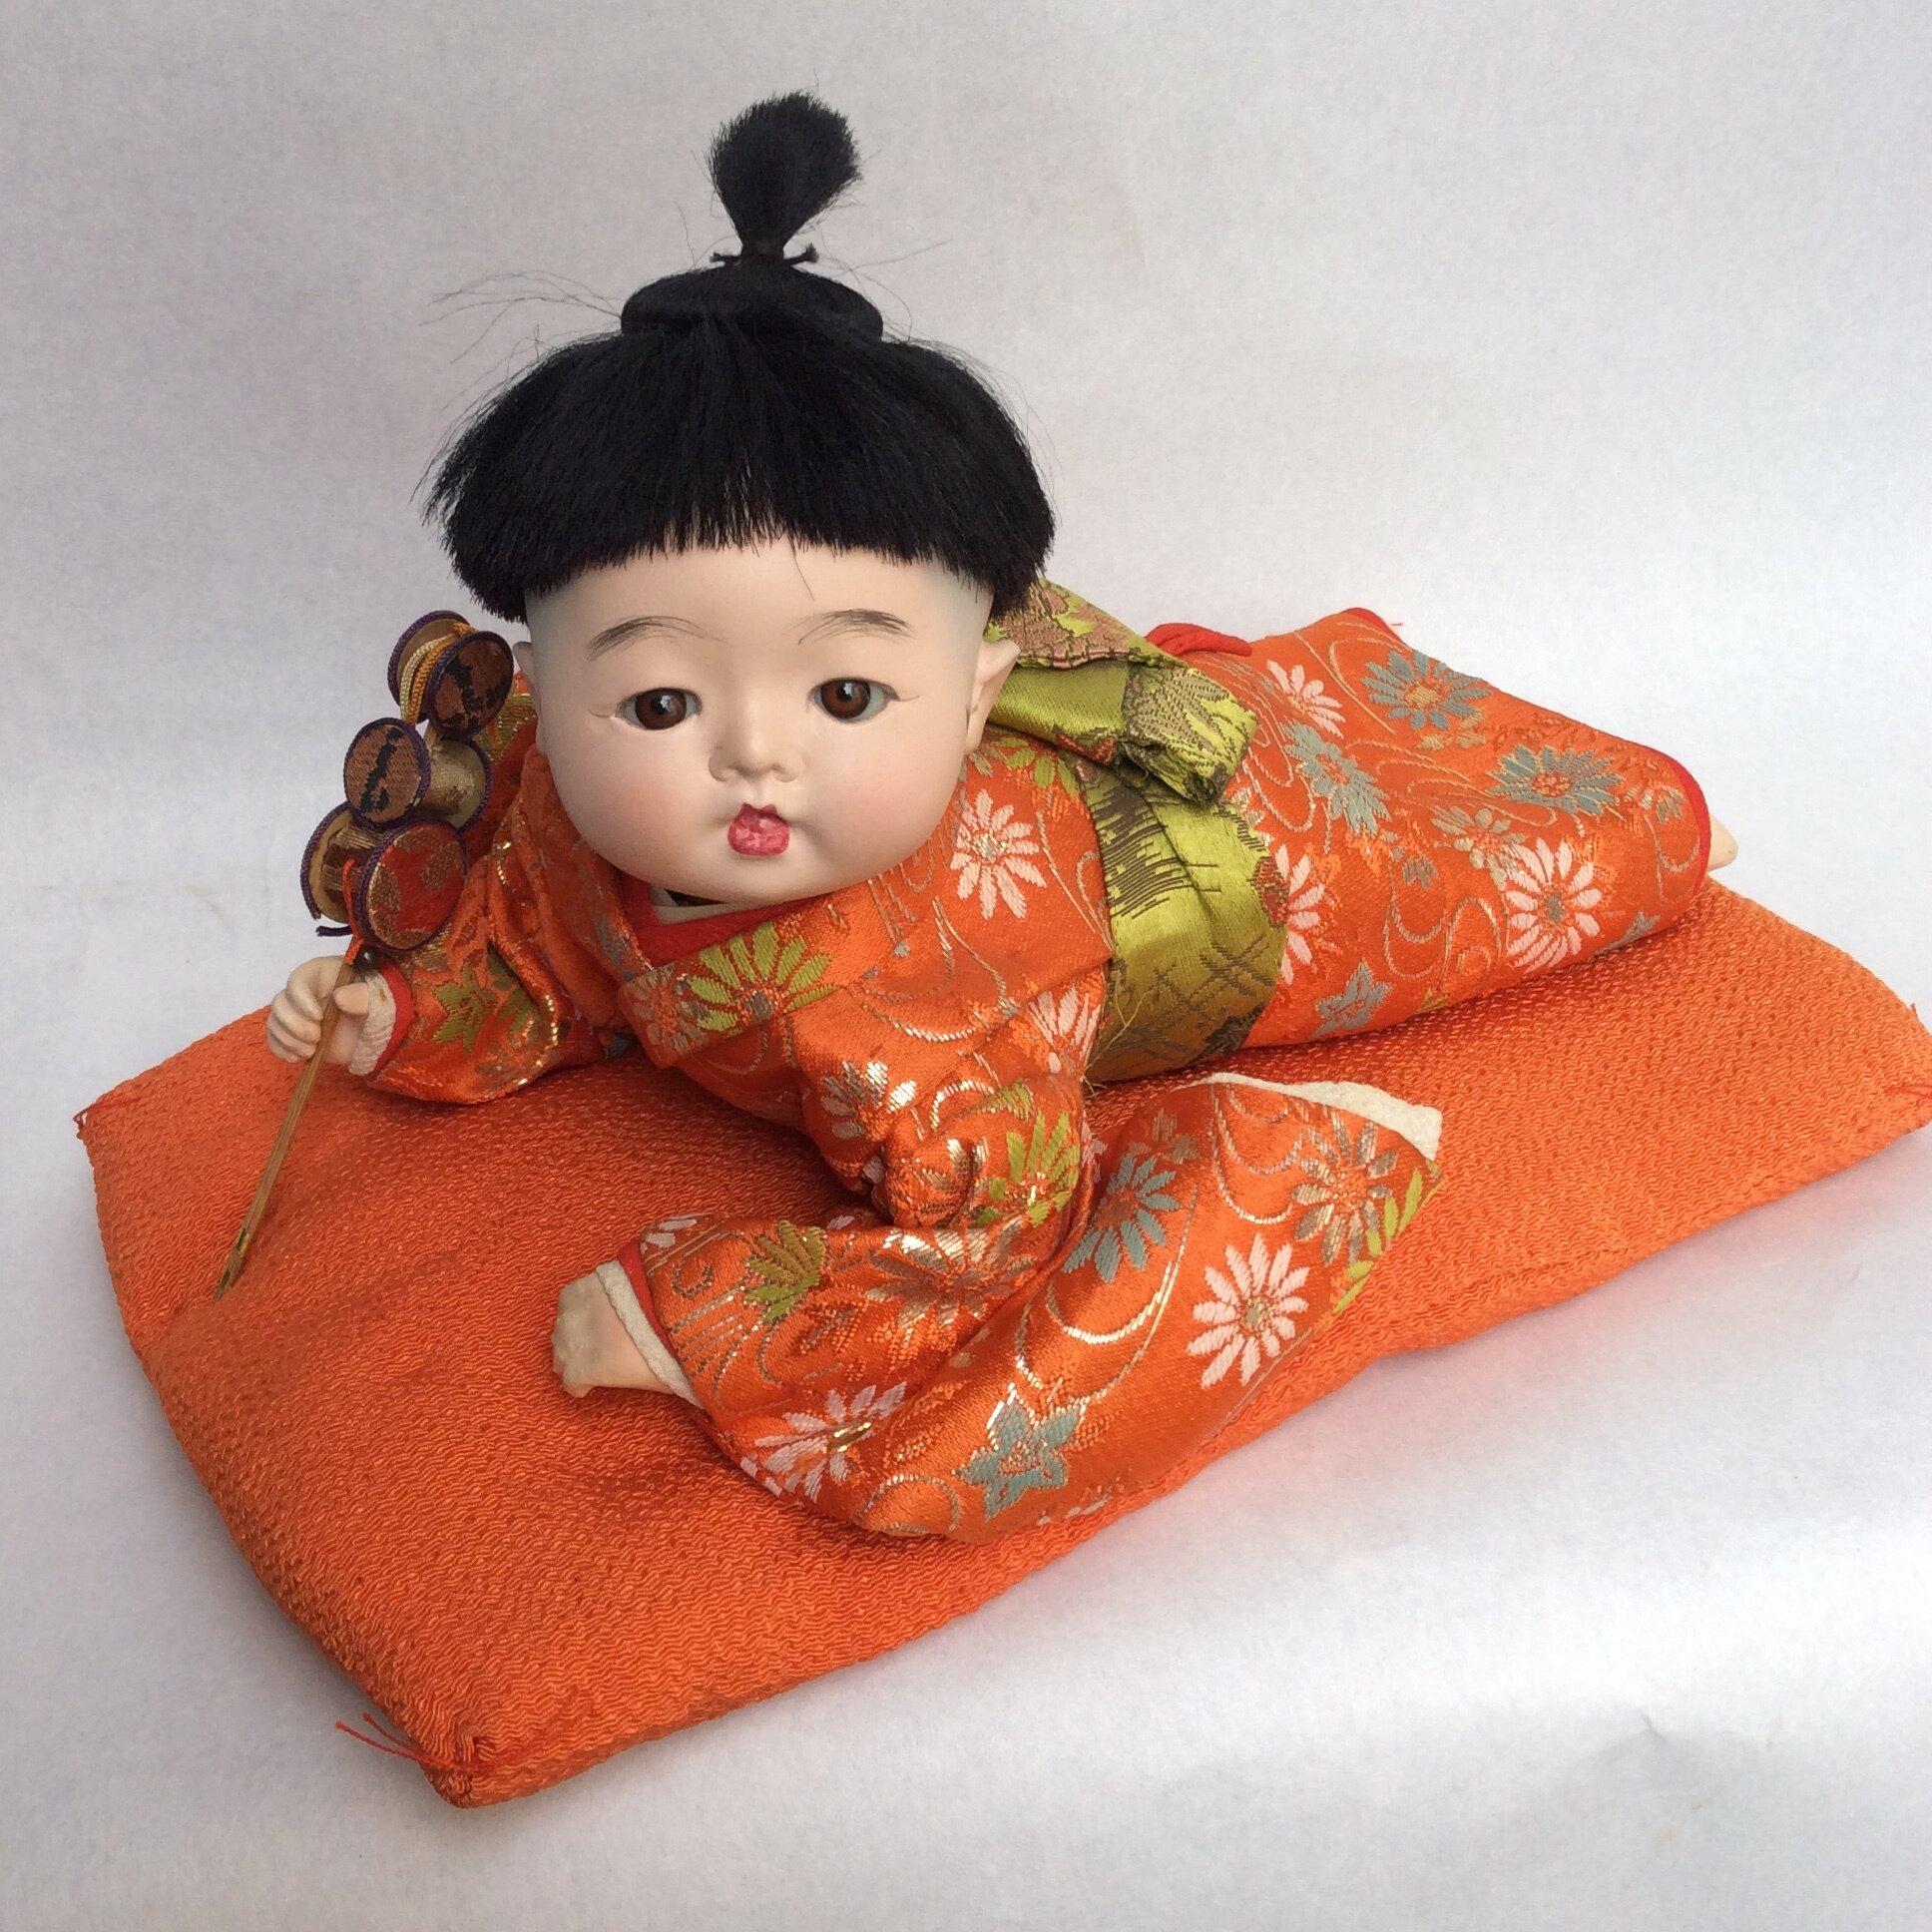 Il s'agit d'une poupée japonaise appelée poupée Ichimatsu 